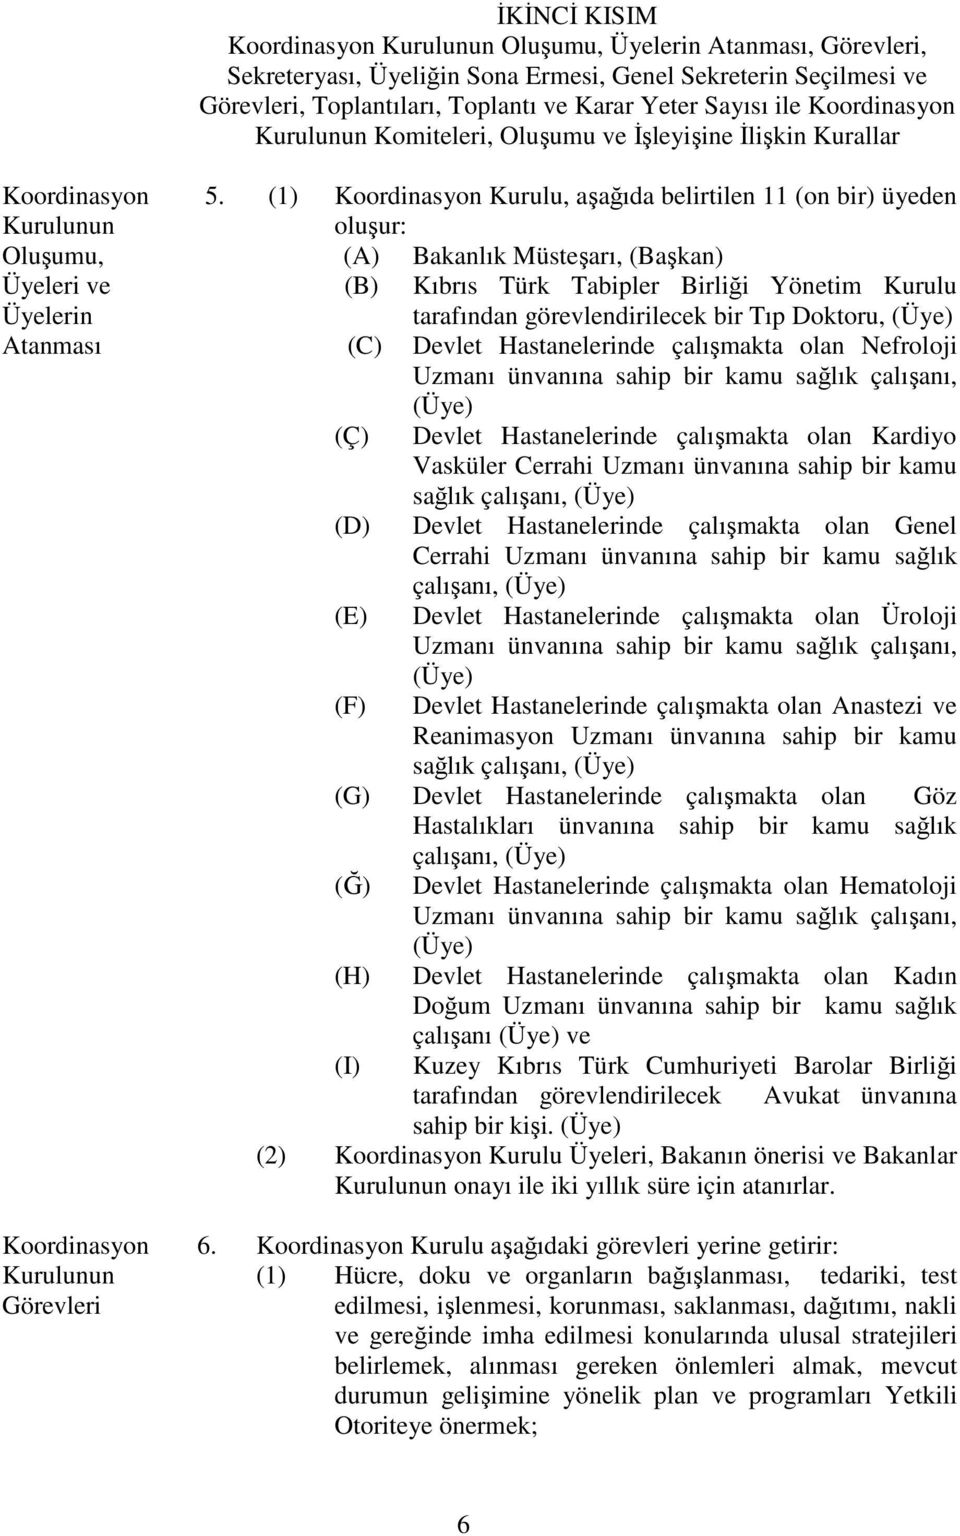 (1) Koordinasyon Kurulu, aşağıda belirtilen 11 (on bir) üyeden oluşur: Oluşumu, (A) Bakanlık Müsteşarı, (Başkan) Üyeleri ve Üyelerin (B) Kıbrıs Türk Tabipler Birliği Yönetim Kurulu tarafından